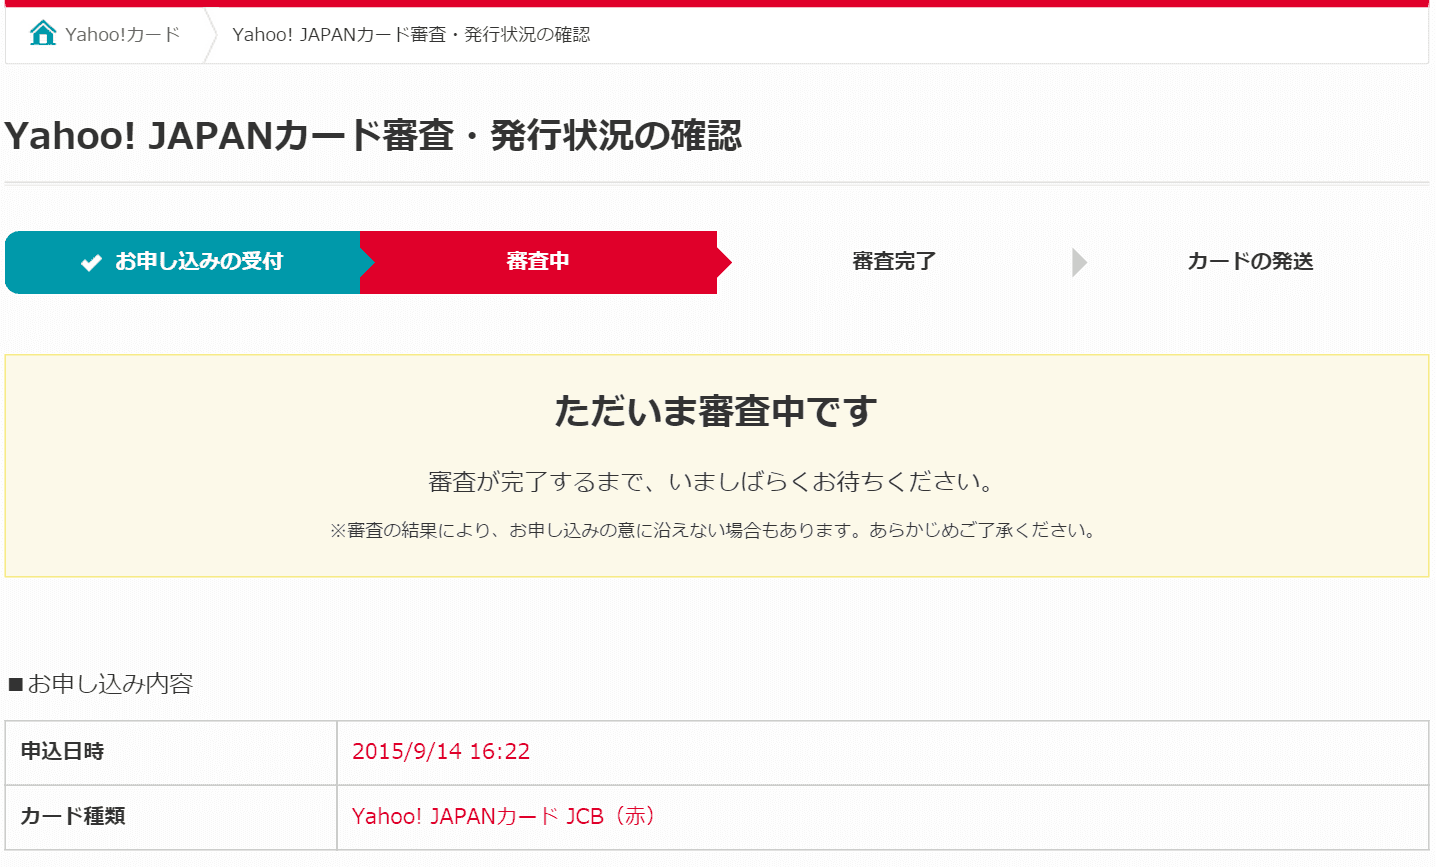 Yahoo! JAPANカード審査・発行状況の確認ページ